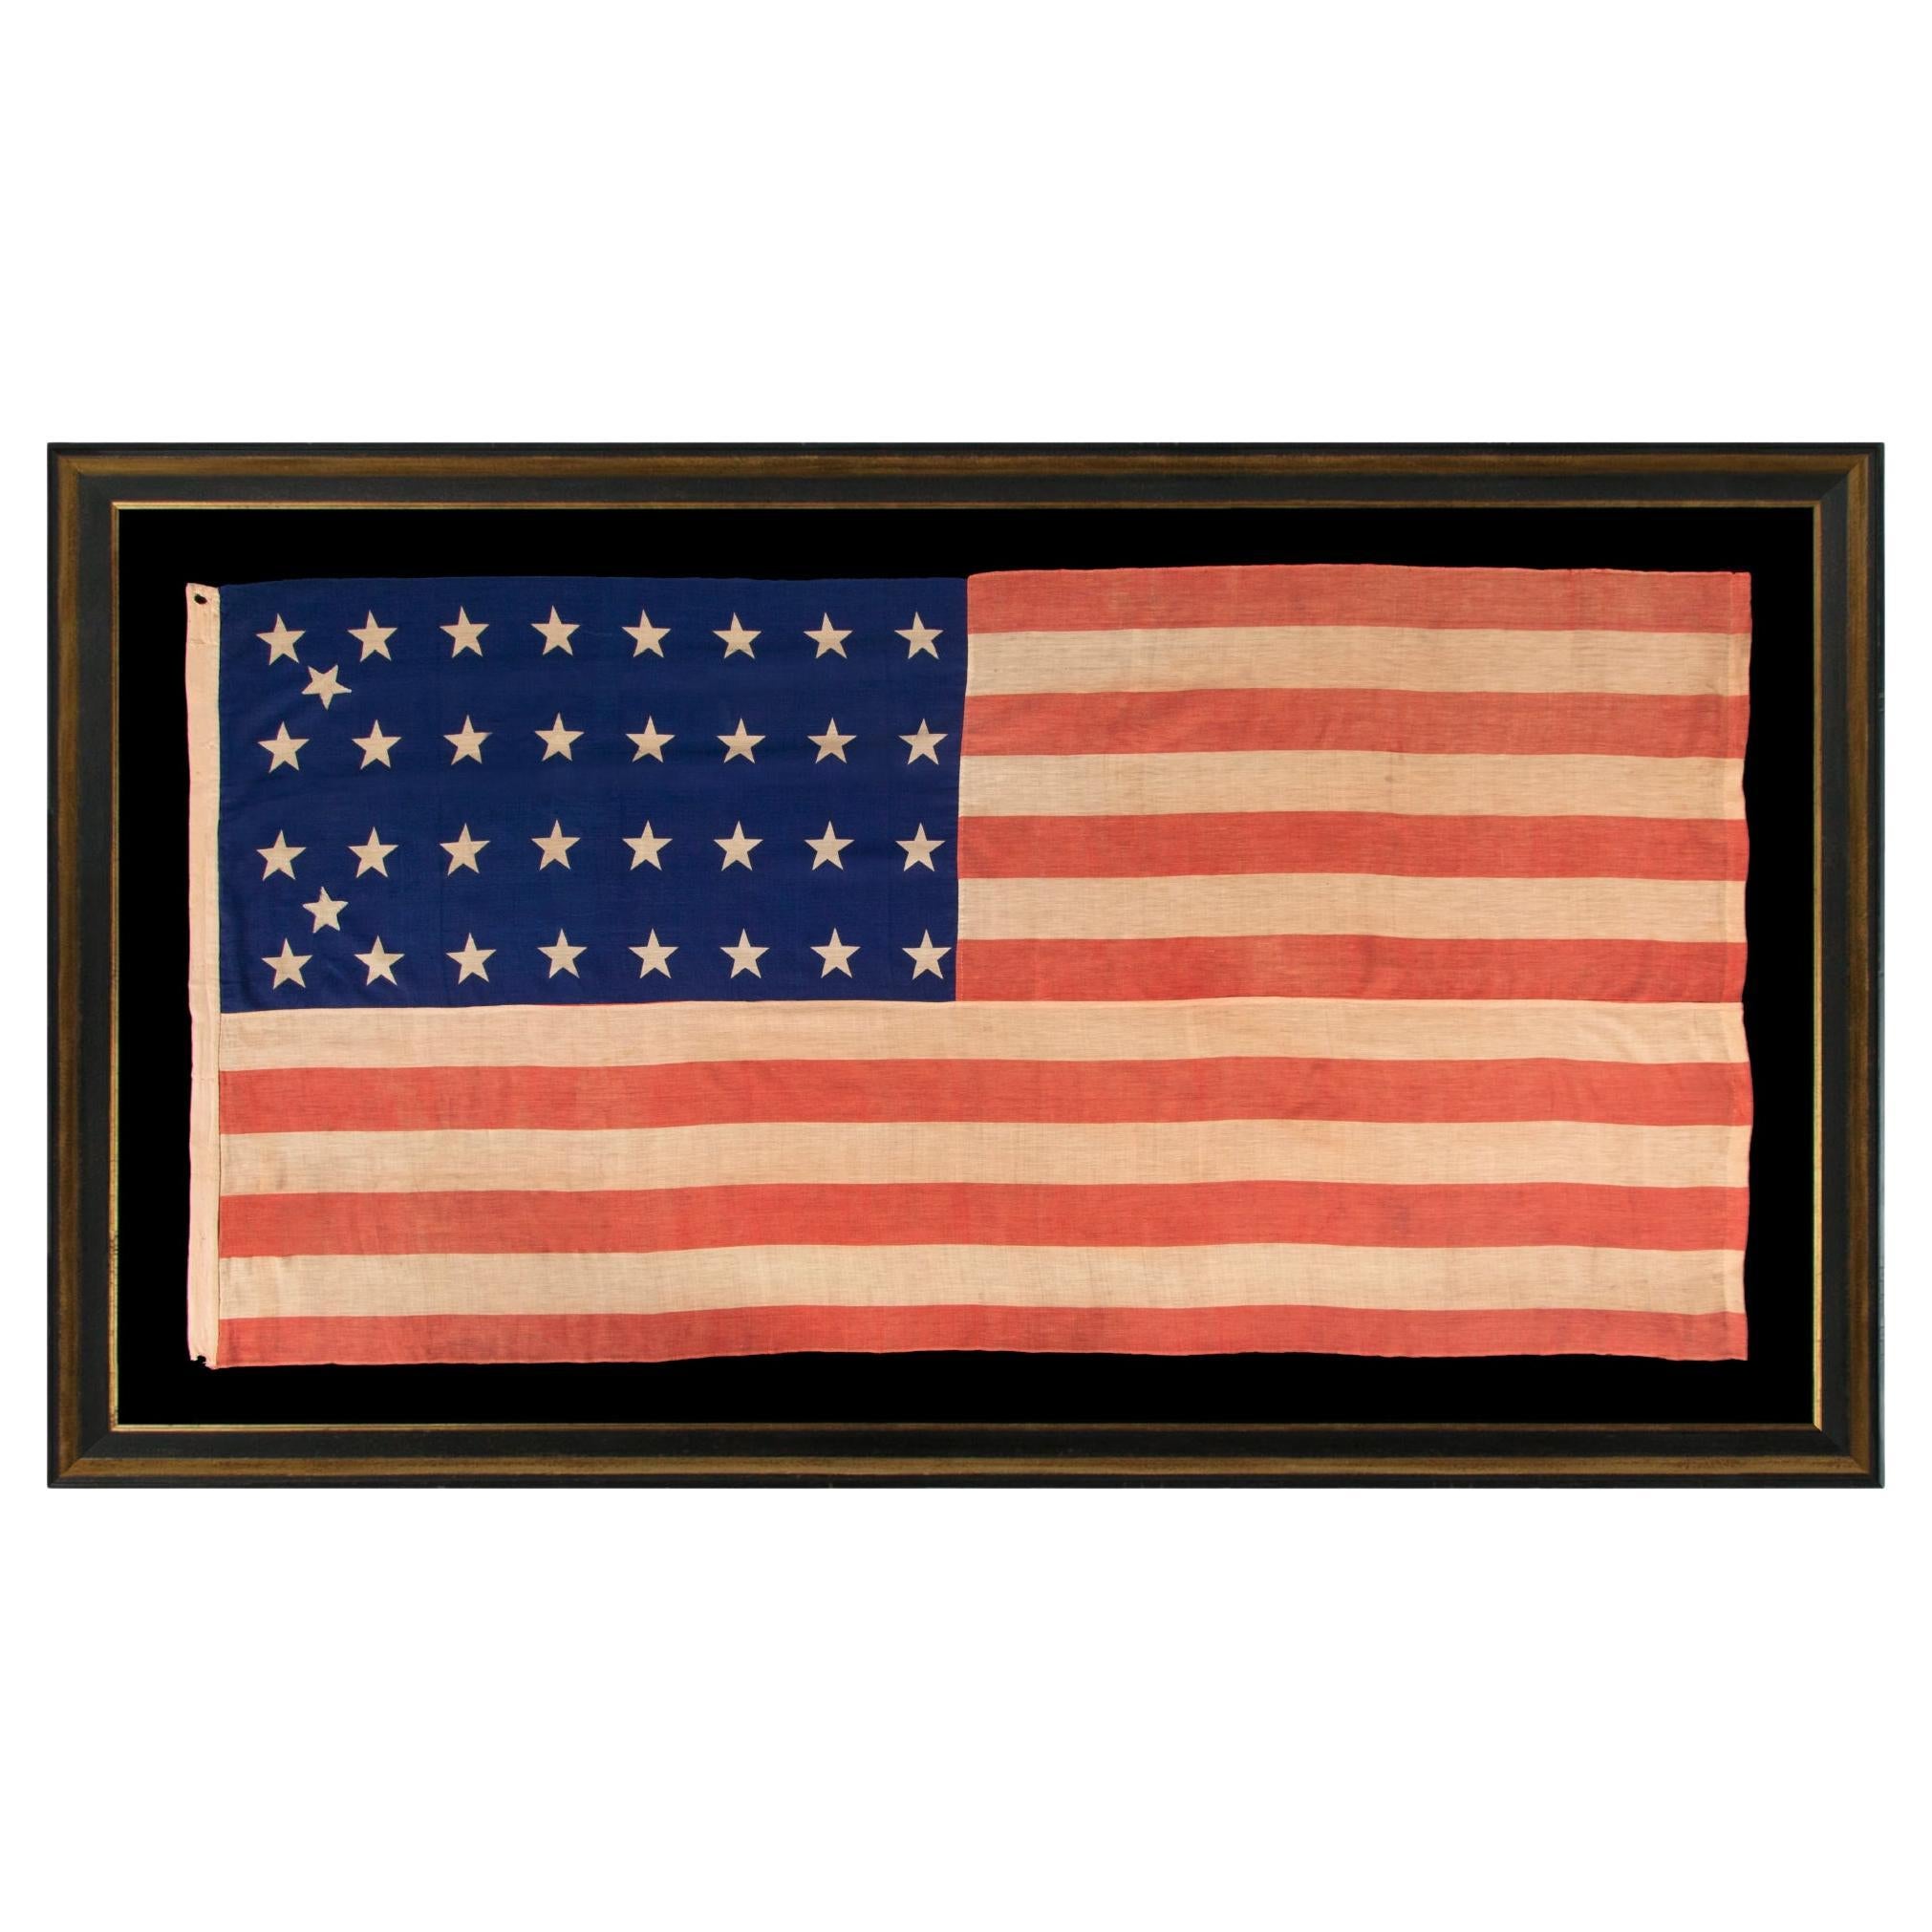 34-Sterne-Flagge der antiken amerikanischen Flagge, Kansas Statehood, Zeit des Bürgerkriegs, um 1861-1863